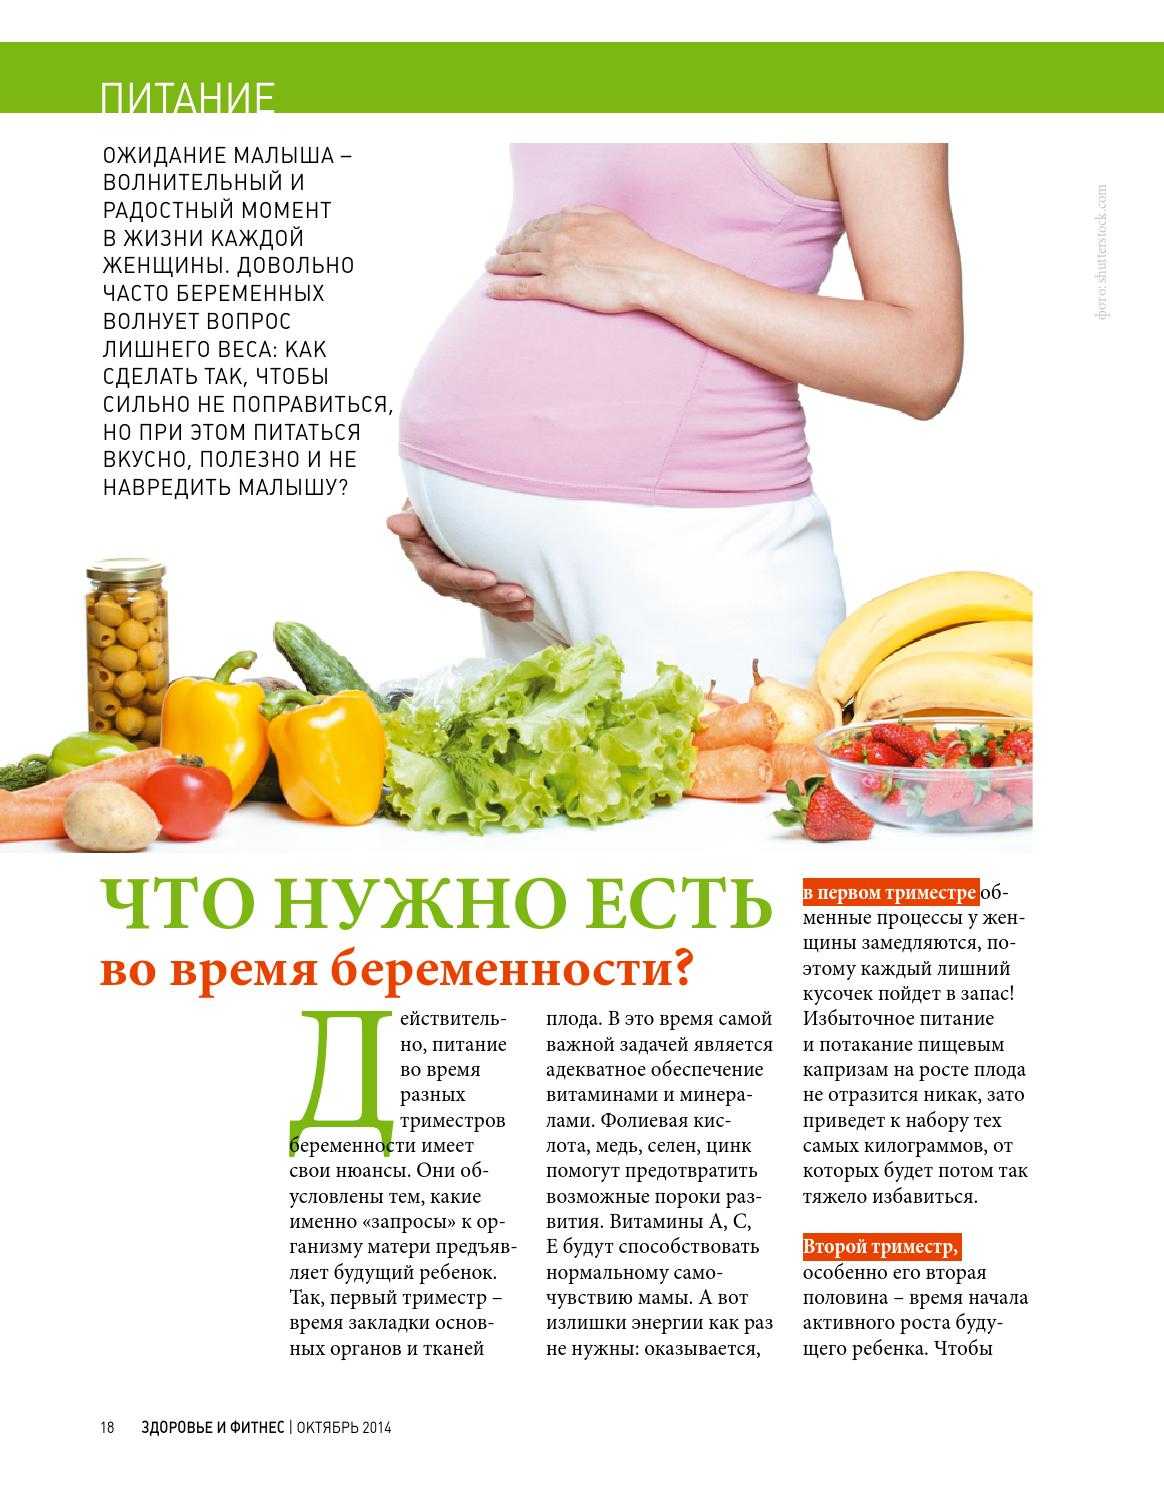 Пить ли витамины на ранних сроках беременности?